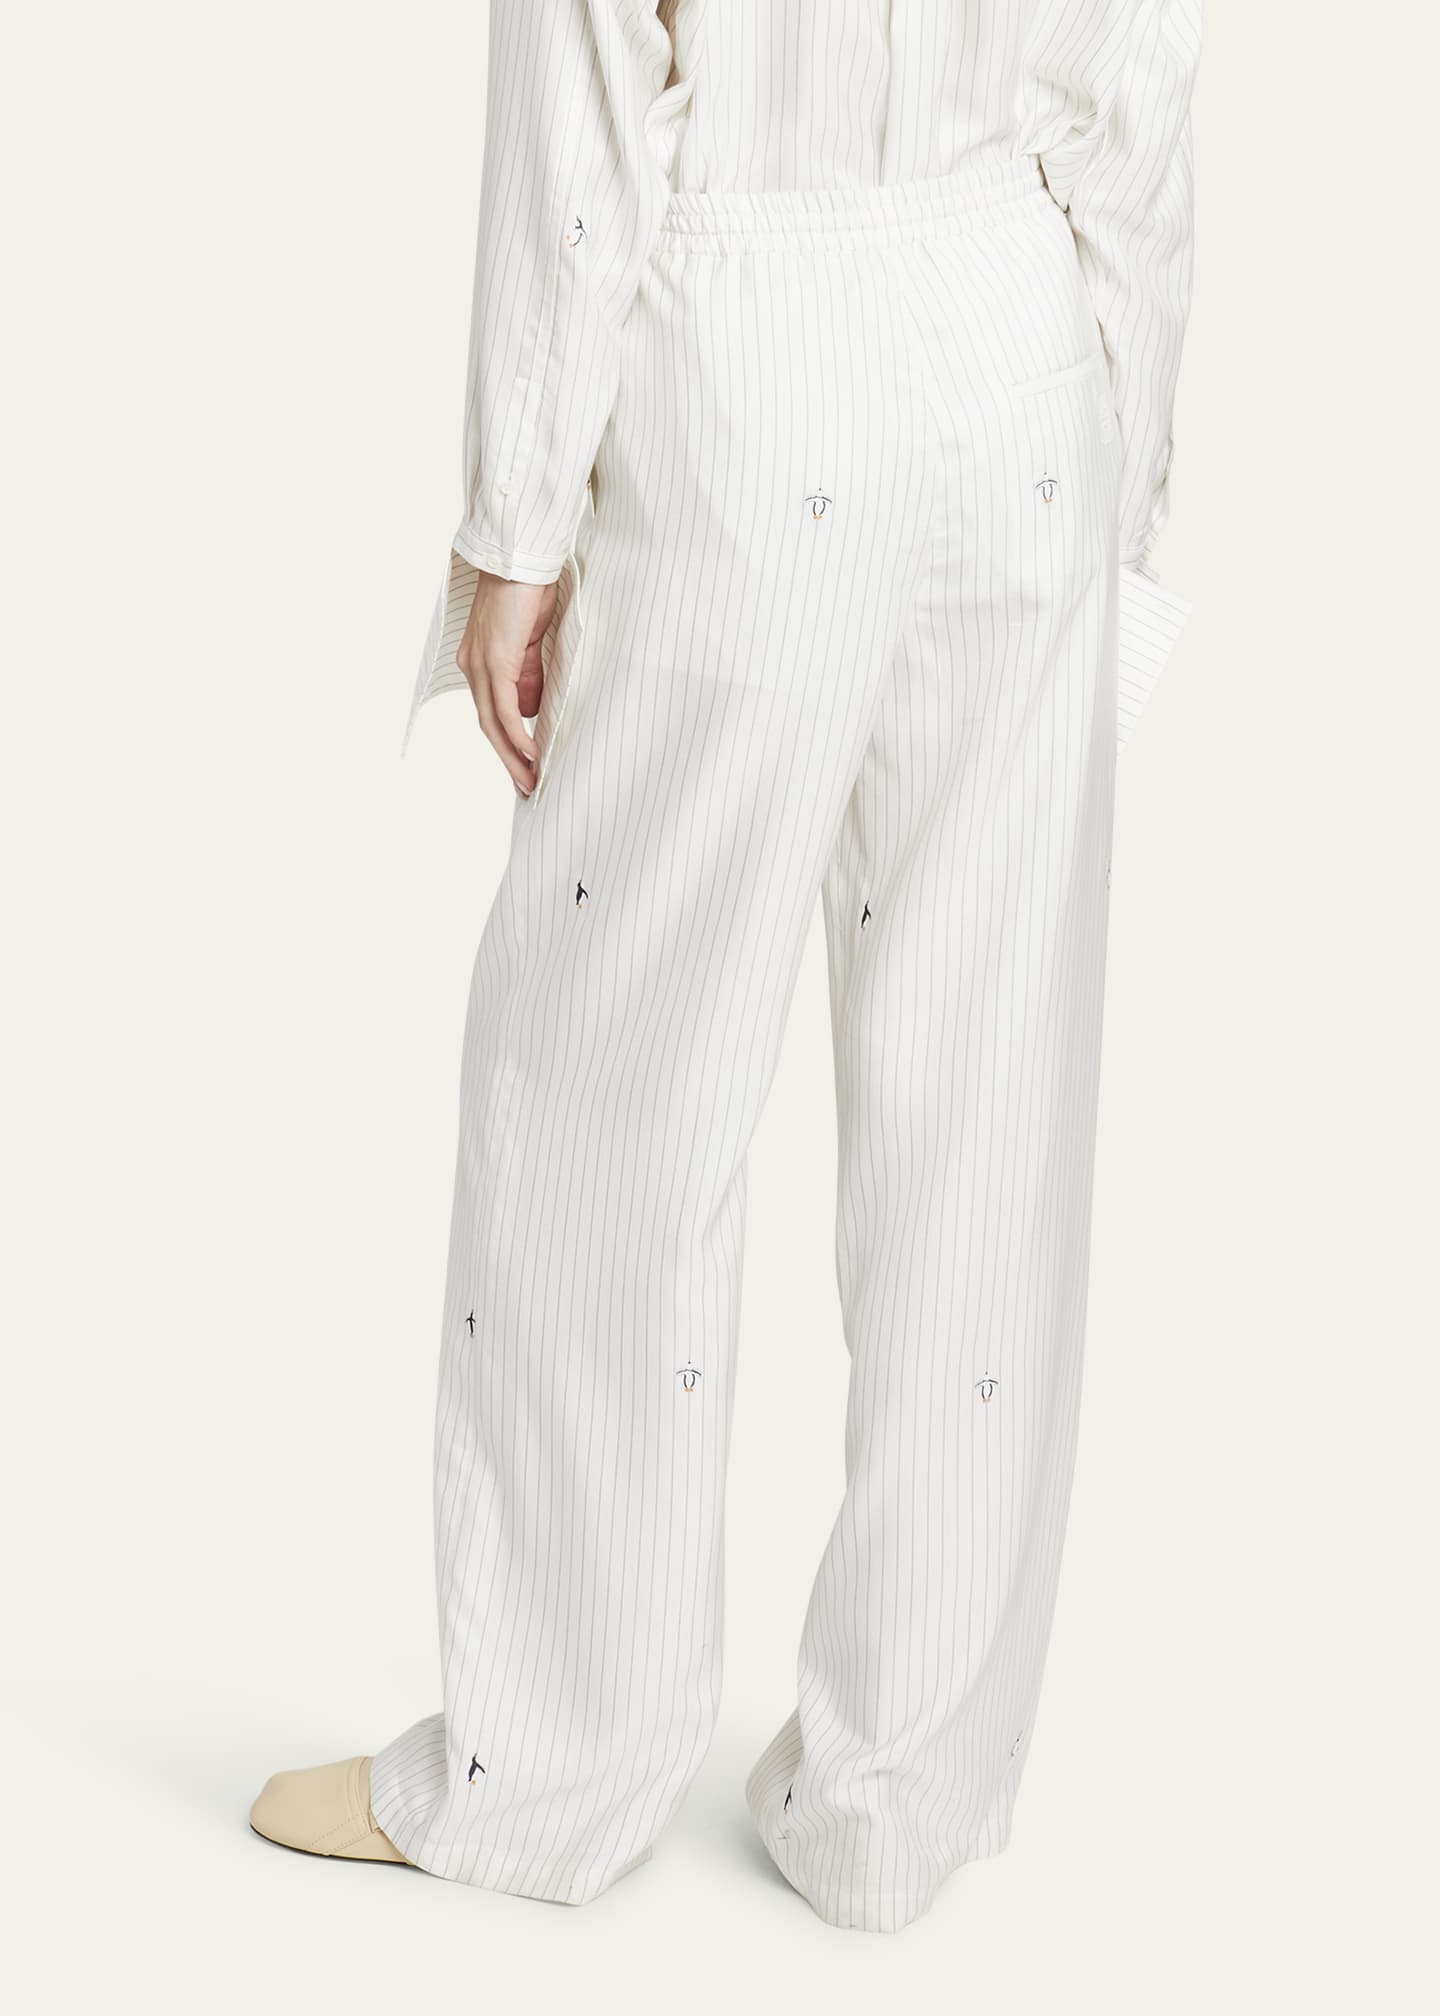 Embroidered pajama pants